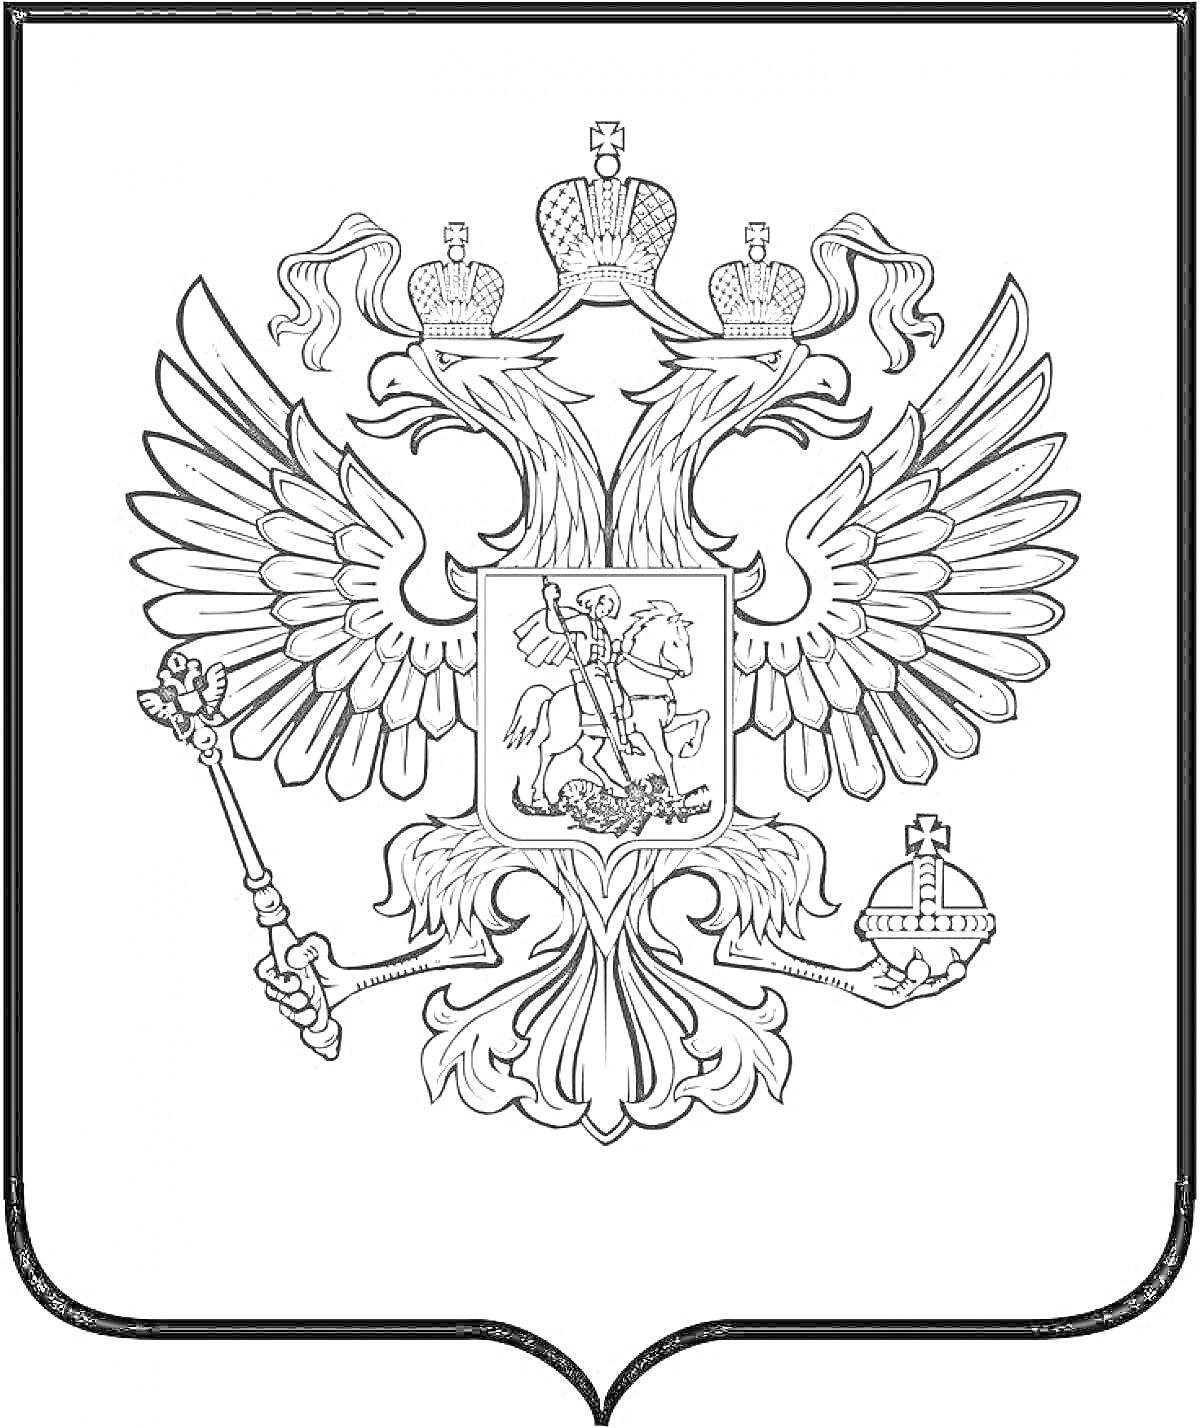 Герб России с двуглавым орлом, тремя коронами, скипетром и державой, в центре изображение всадника, поражающего дракона